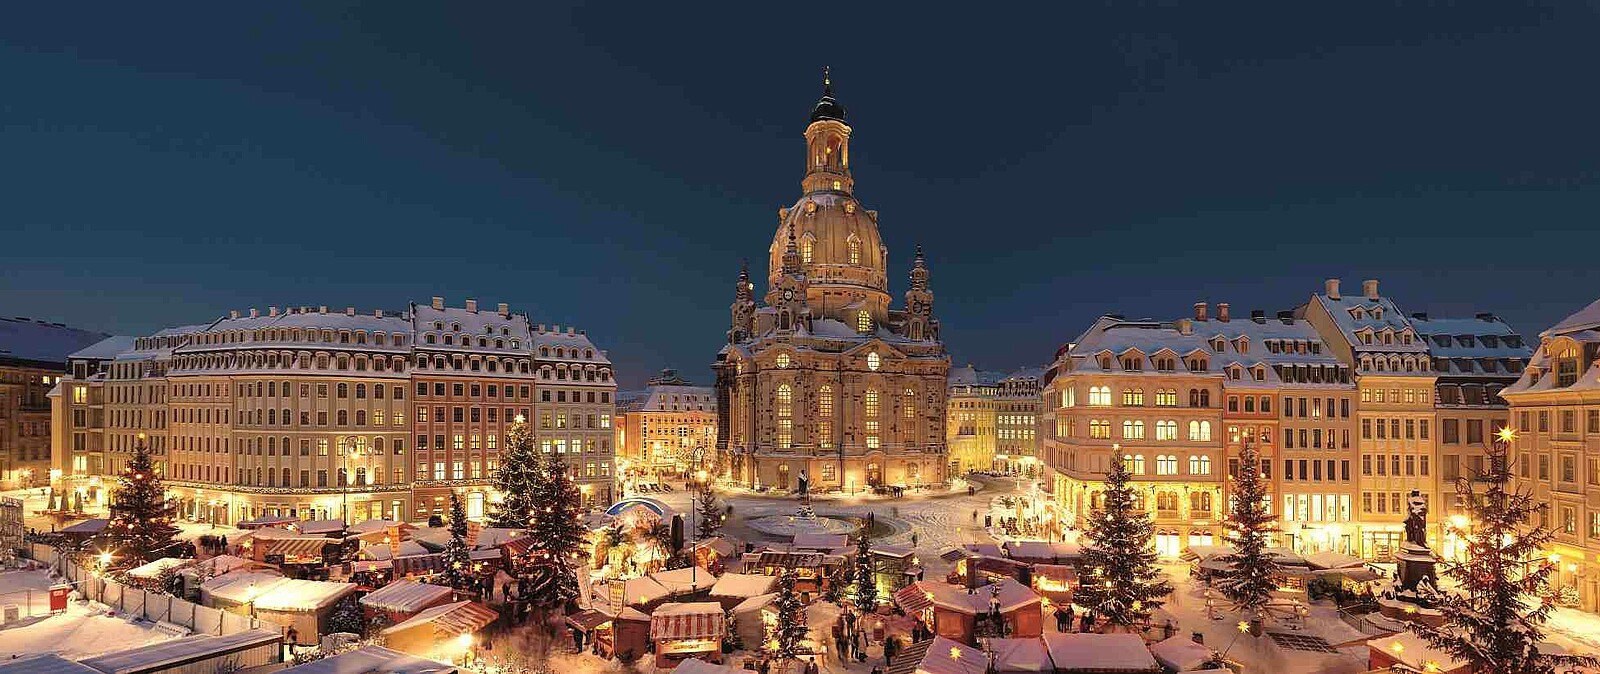 Genießen Sie Dresden in der Weihnachtszeit und erleben Sie weihnachtliche Klänge und Lichter. Beim Konzert in der Dresnder Frauenkirche lauschen Sie weihnachtlichen Klängen.